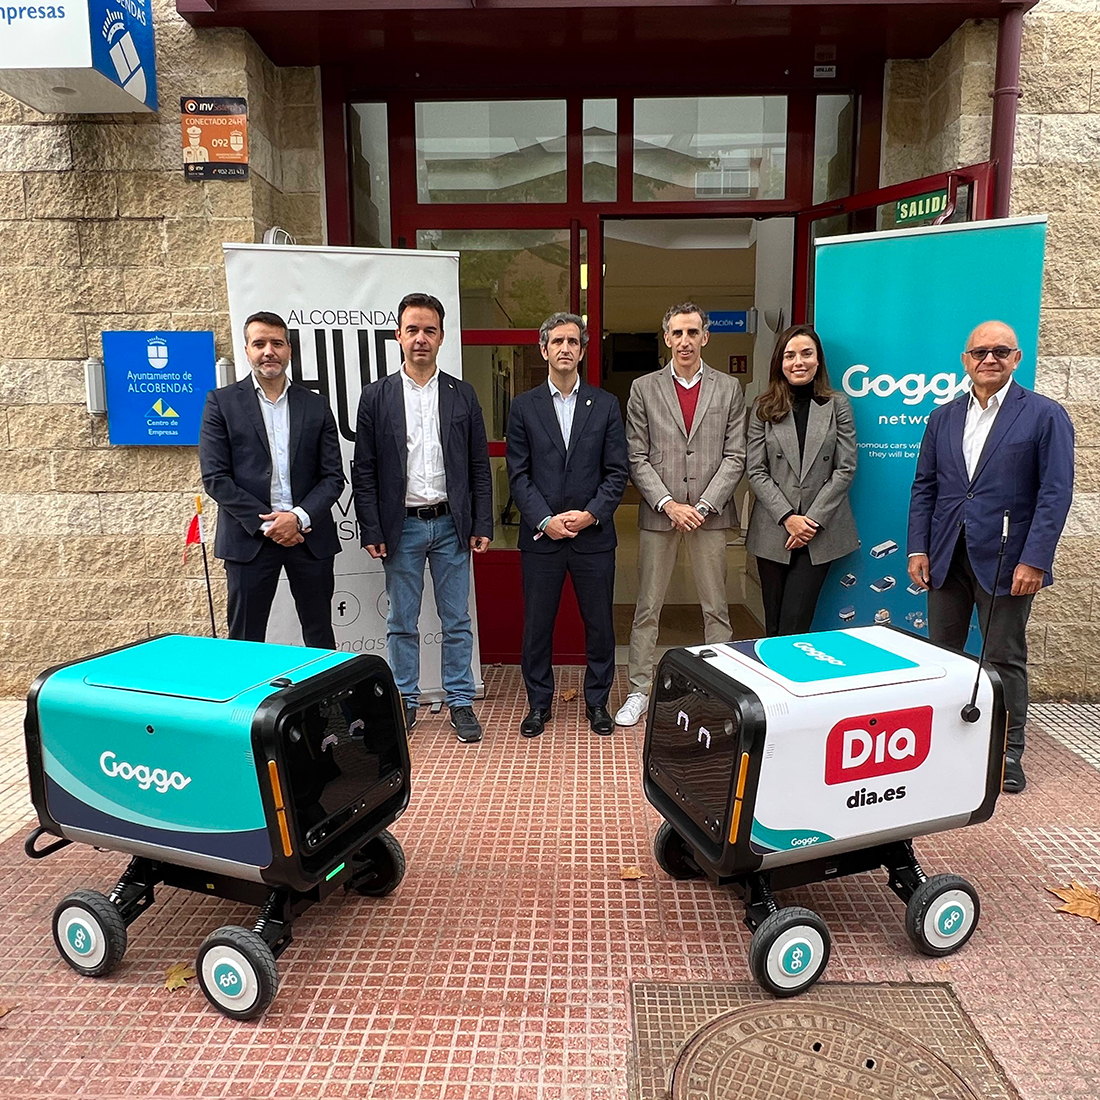 Los robots autónomos de Goggo Network ya reparten pedidos de Dia en Alcobendas